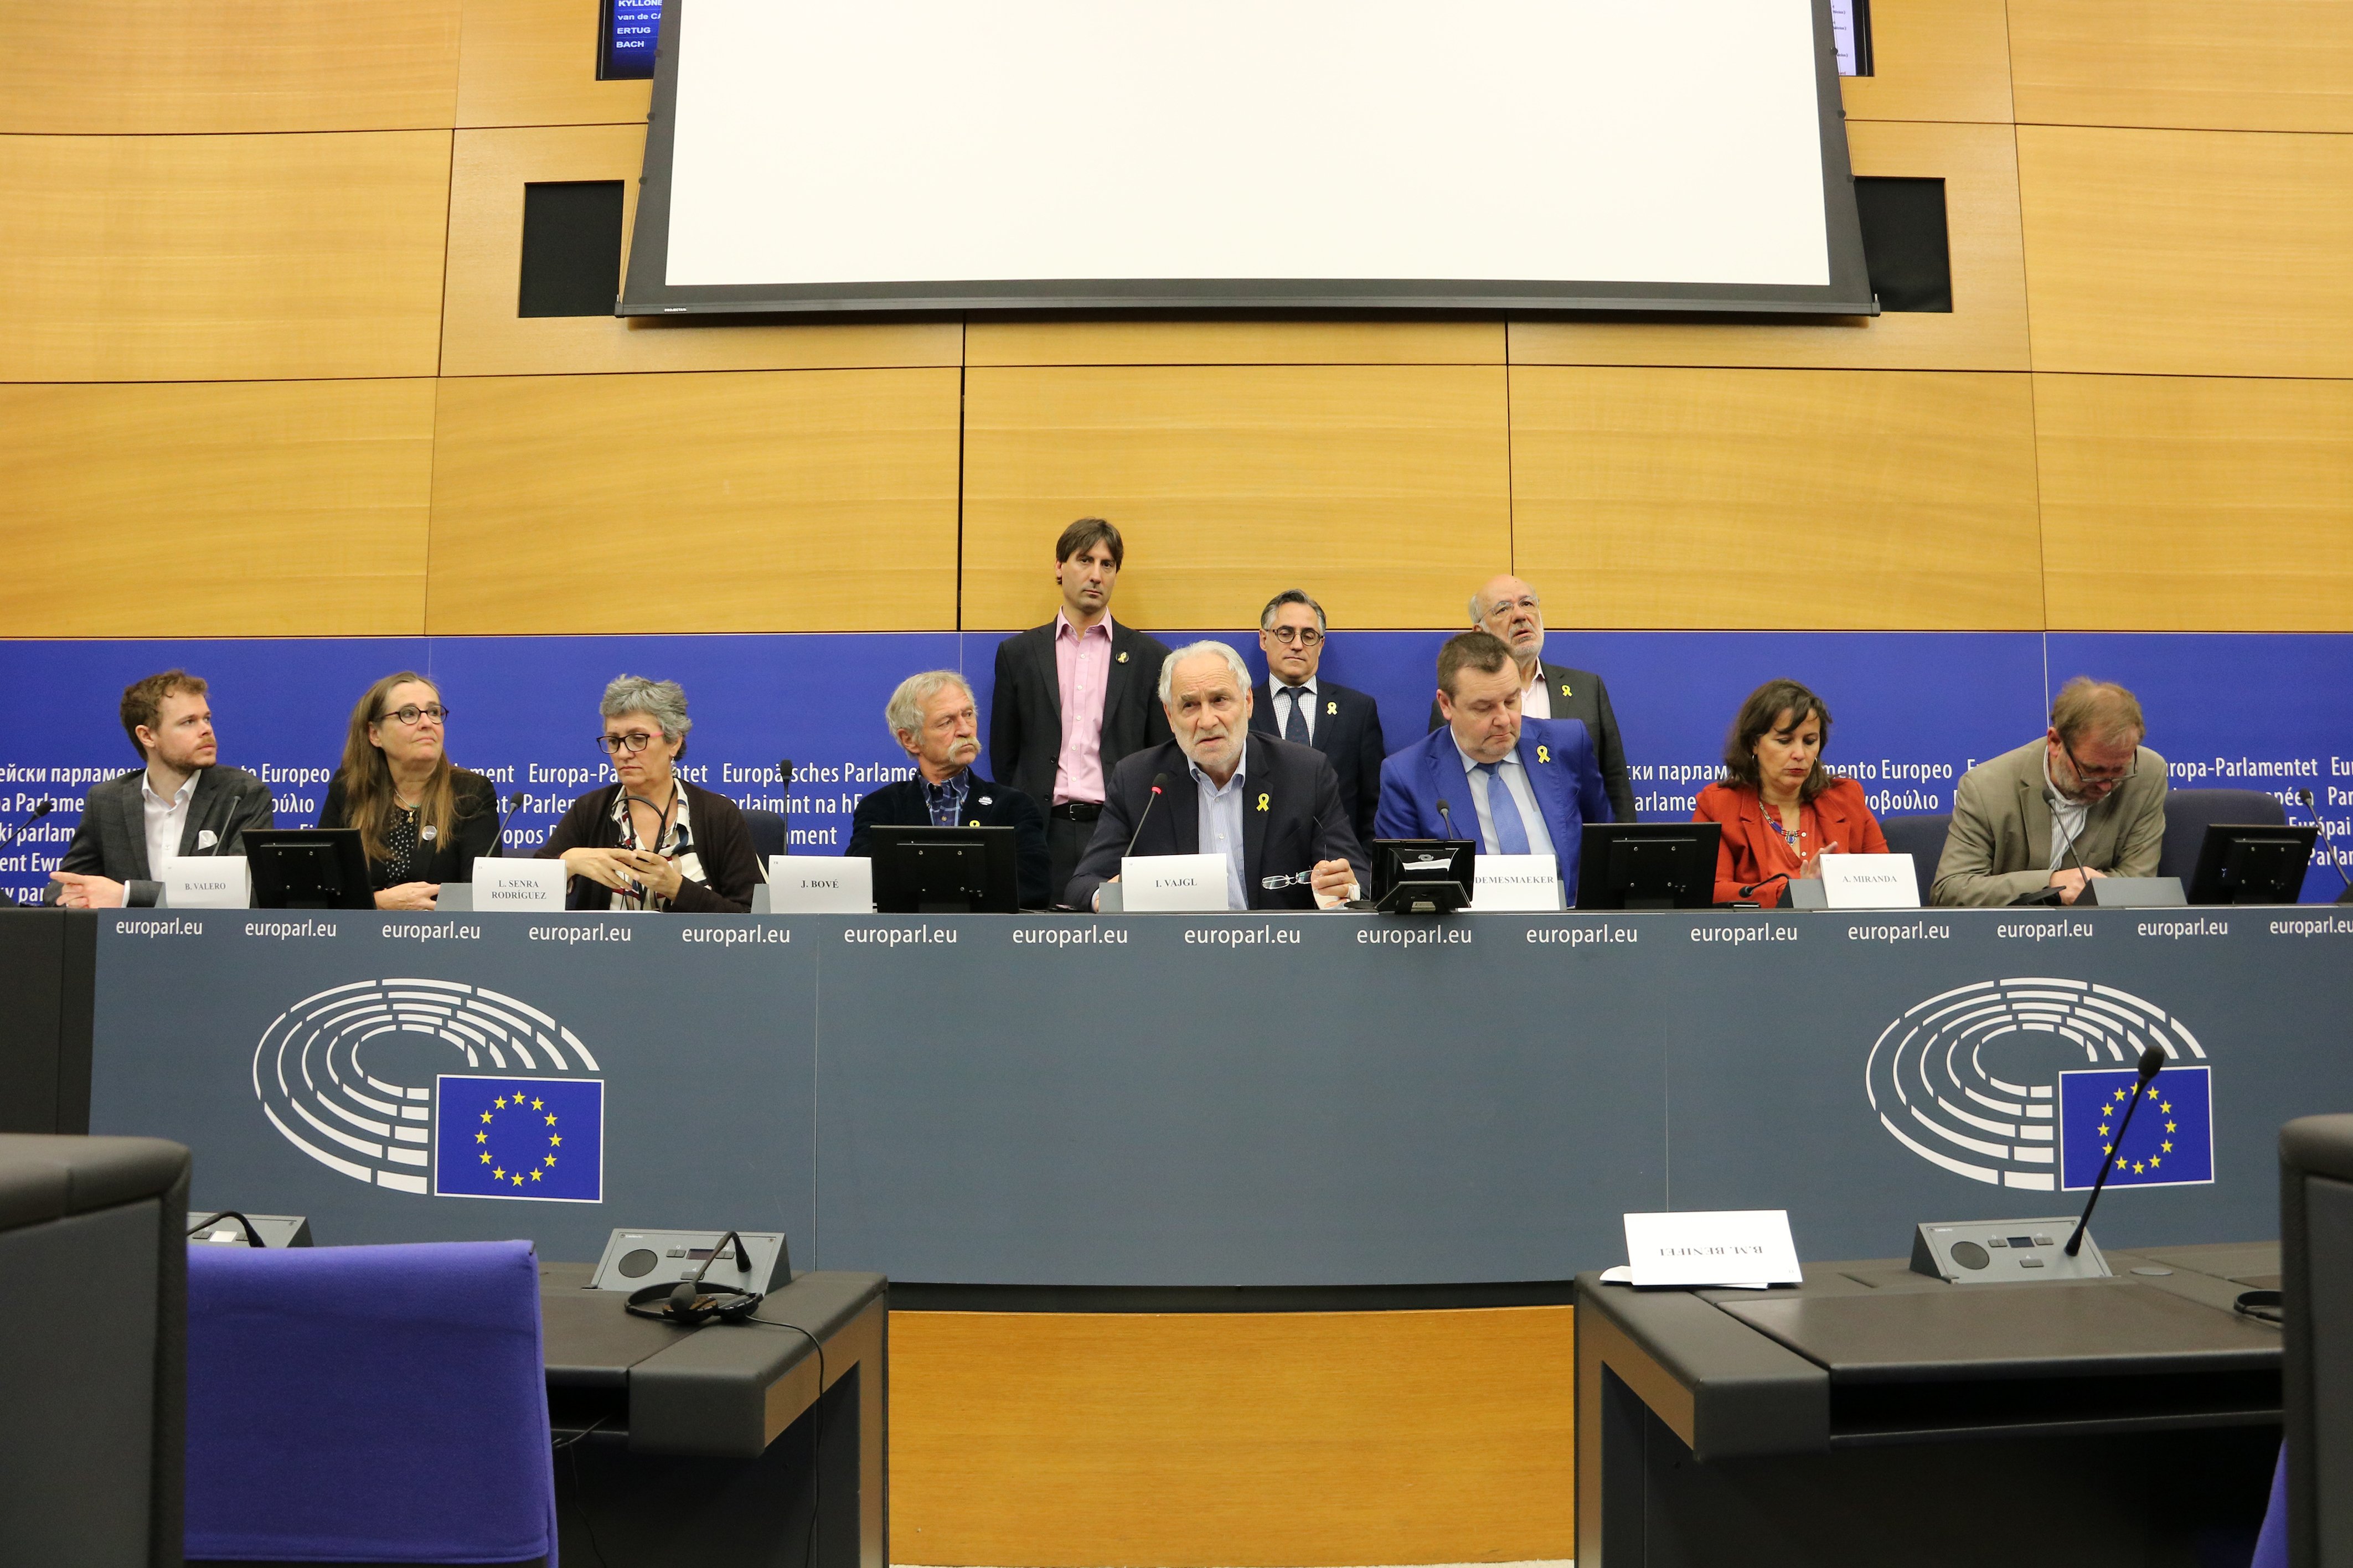 Eurodiputats denuncien a la defensora del poble europeu el veto a Puigdemont i Comín